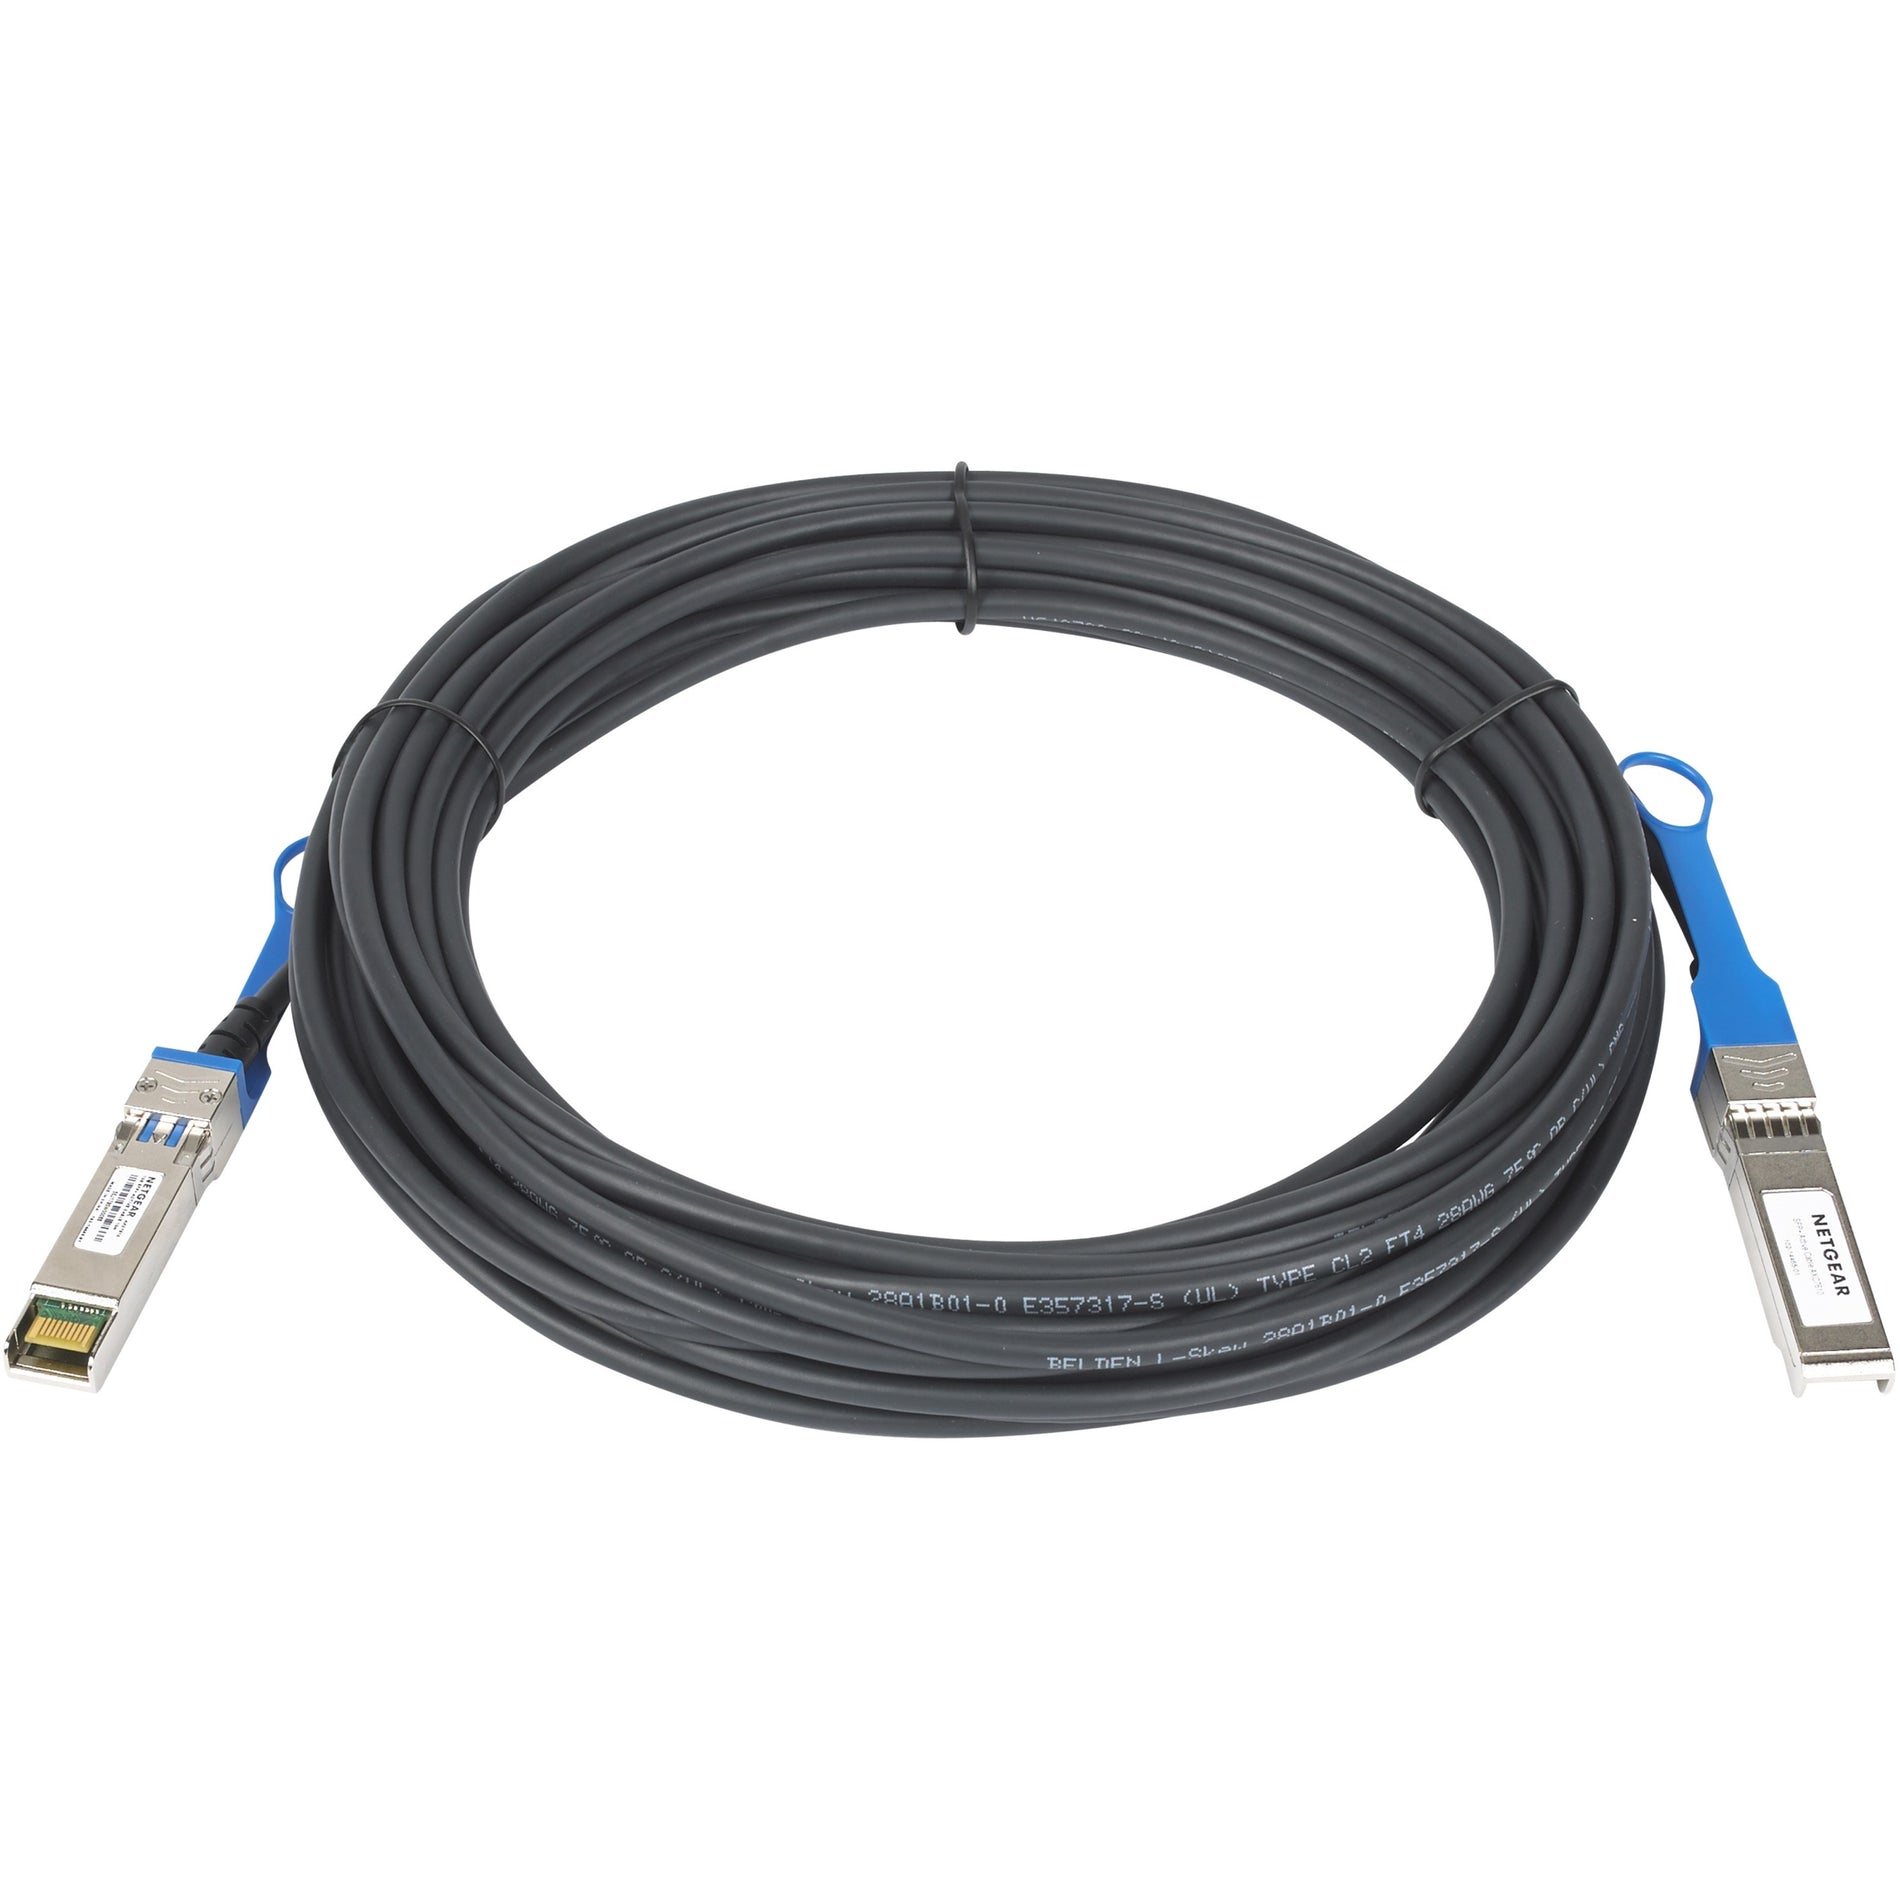 Netgear AXC7610-10000S 10m Direct Attach Active SFP+ DAC Cable 10 Gbit/s Data Transfer Rate  Netgear AXC7610-10000S 10m Câble DAC SFP+ Actif à Connexion Directe Taux de Transfert de Données de 10 Gbit/s